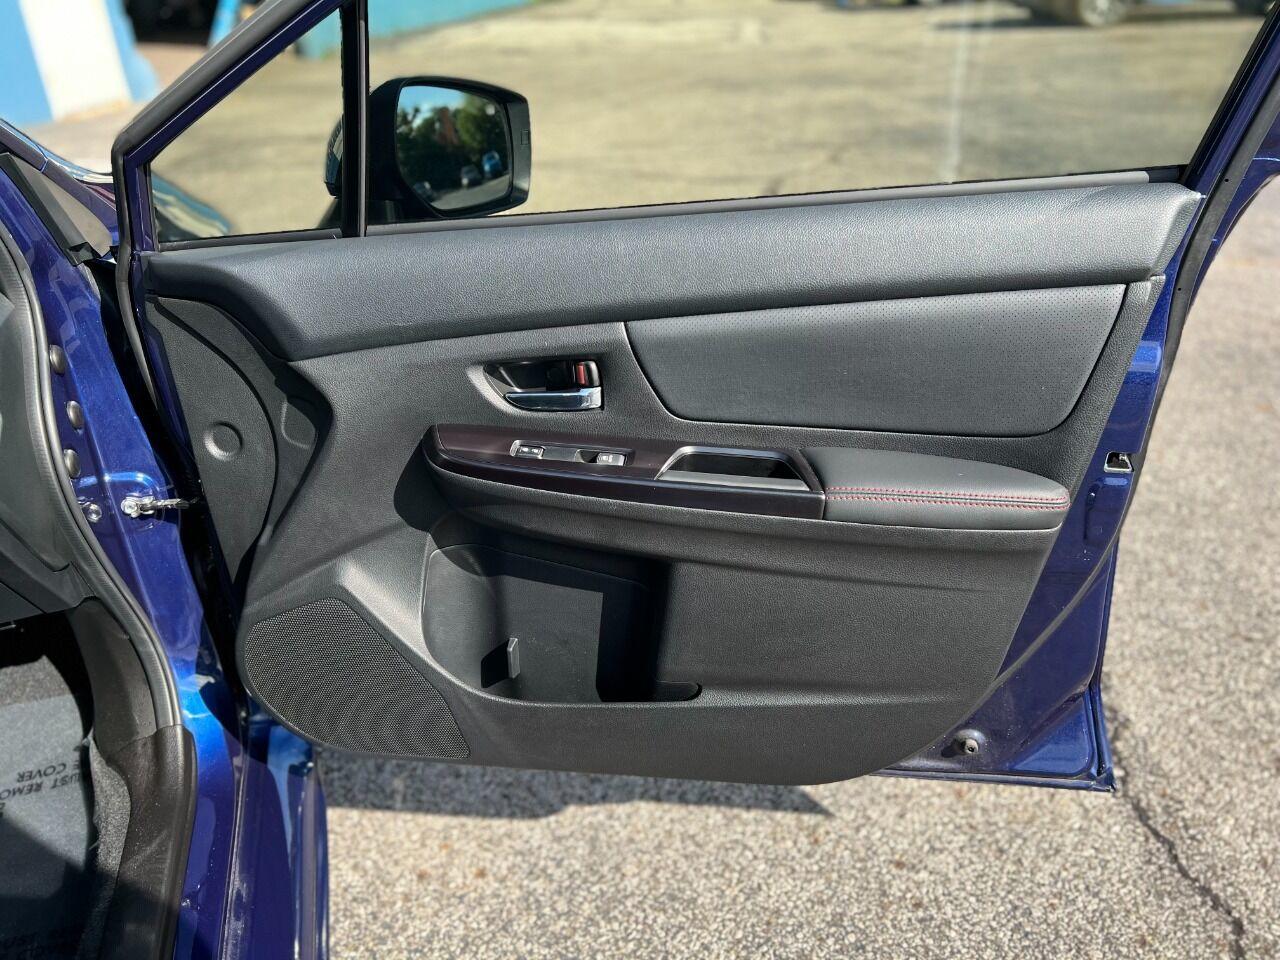 2018 Subaru WRX Limited AWD 4dr Sedan CVT